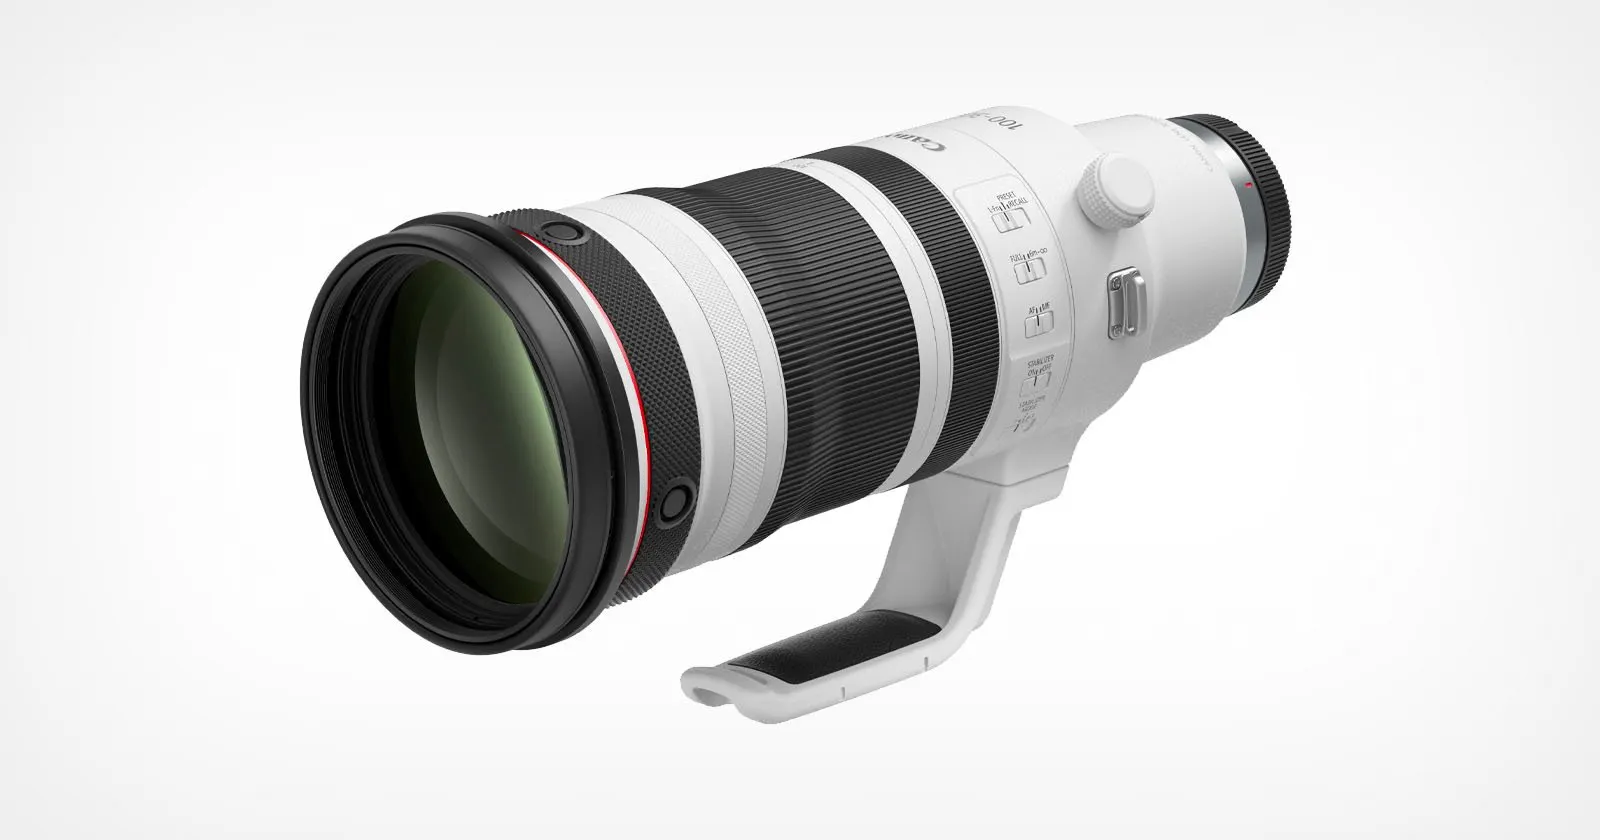 Canon ra mắt RF 100-300mm F2.8L IS USM: Sự đa dạng chưa từng có đối với ống kính tele